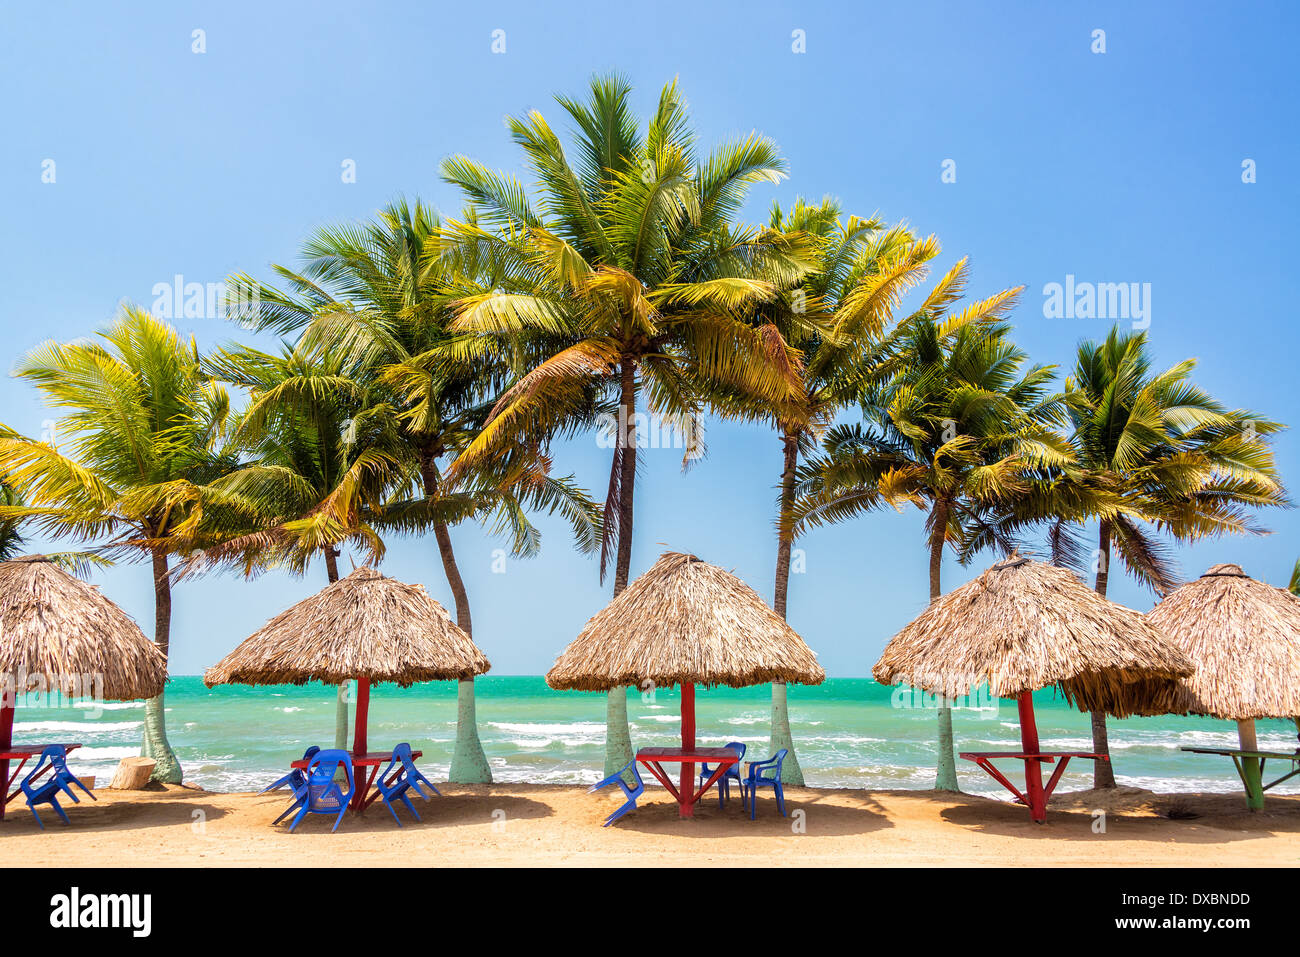 Le palme e il Mare dei Caraibi a Covenas in Colombia con tabelle di rilassarvi a Foto Stock